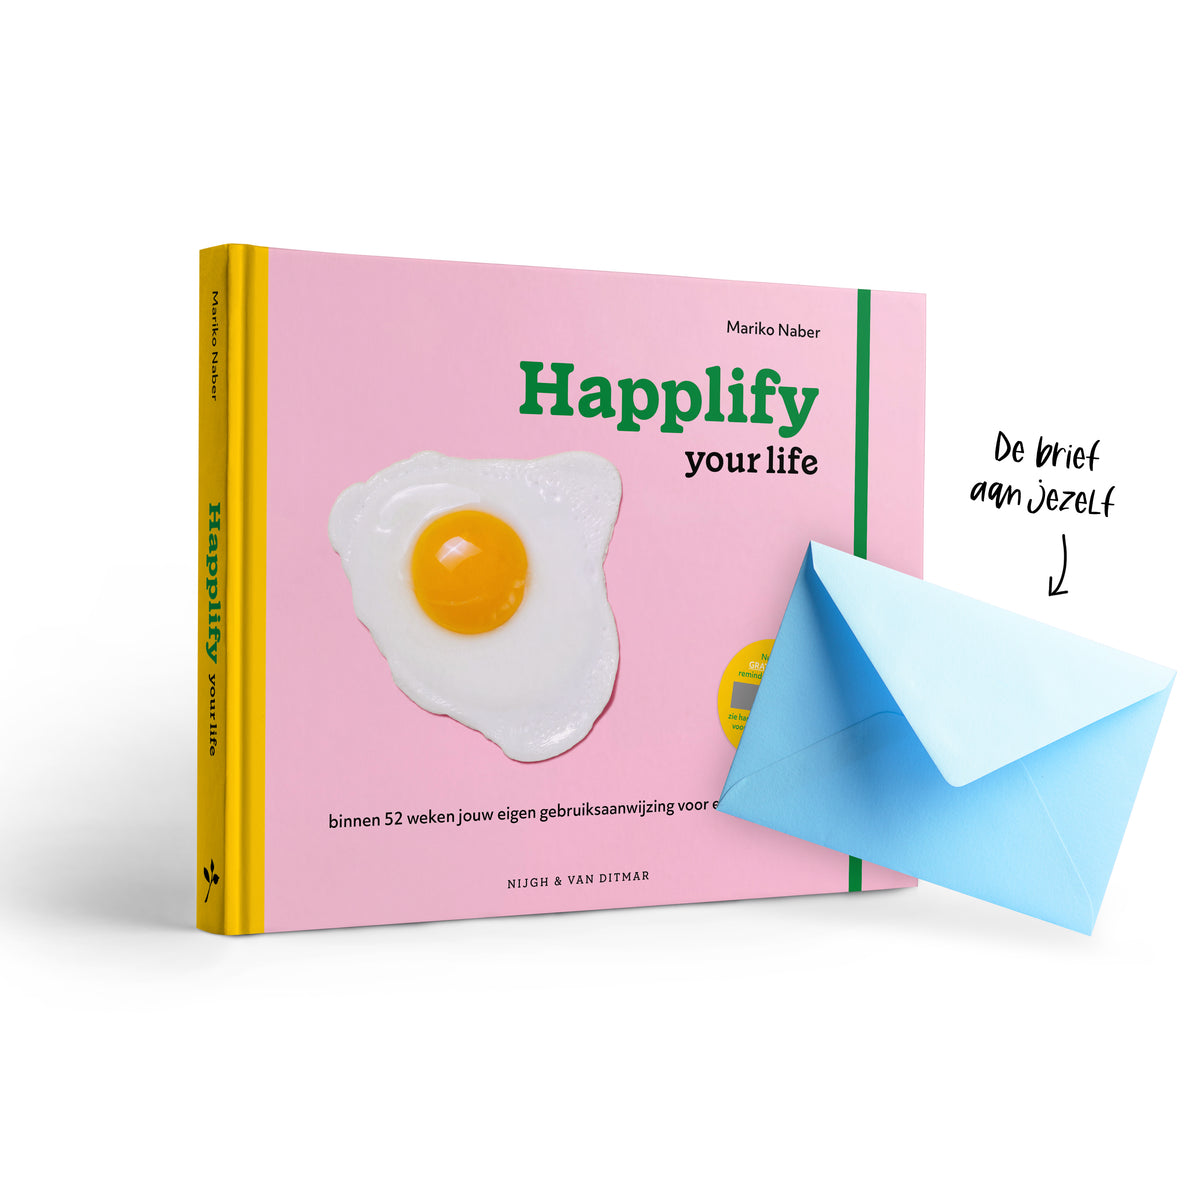 Happlify your life - Brief aan jezelf